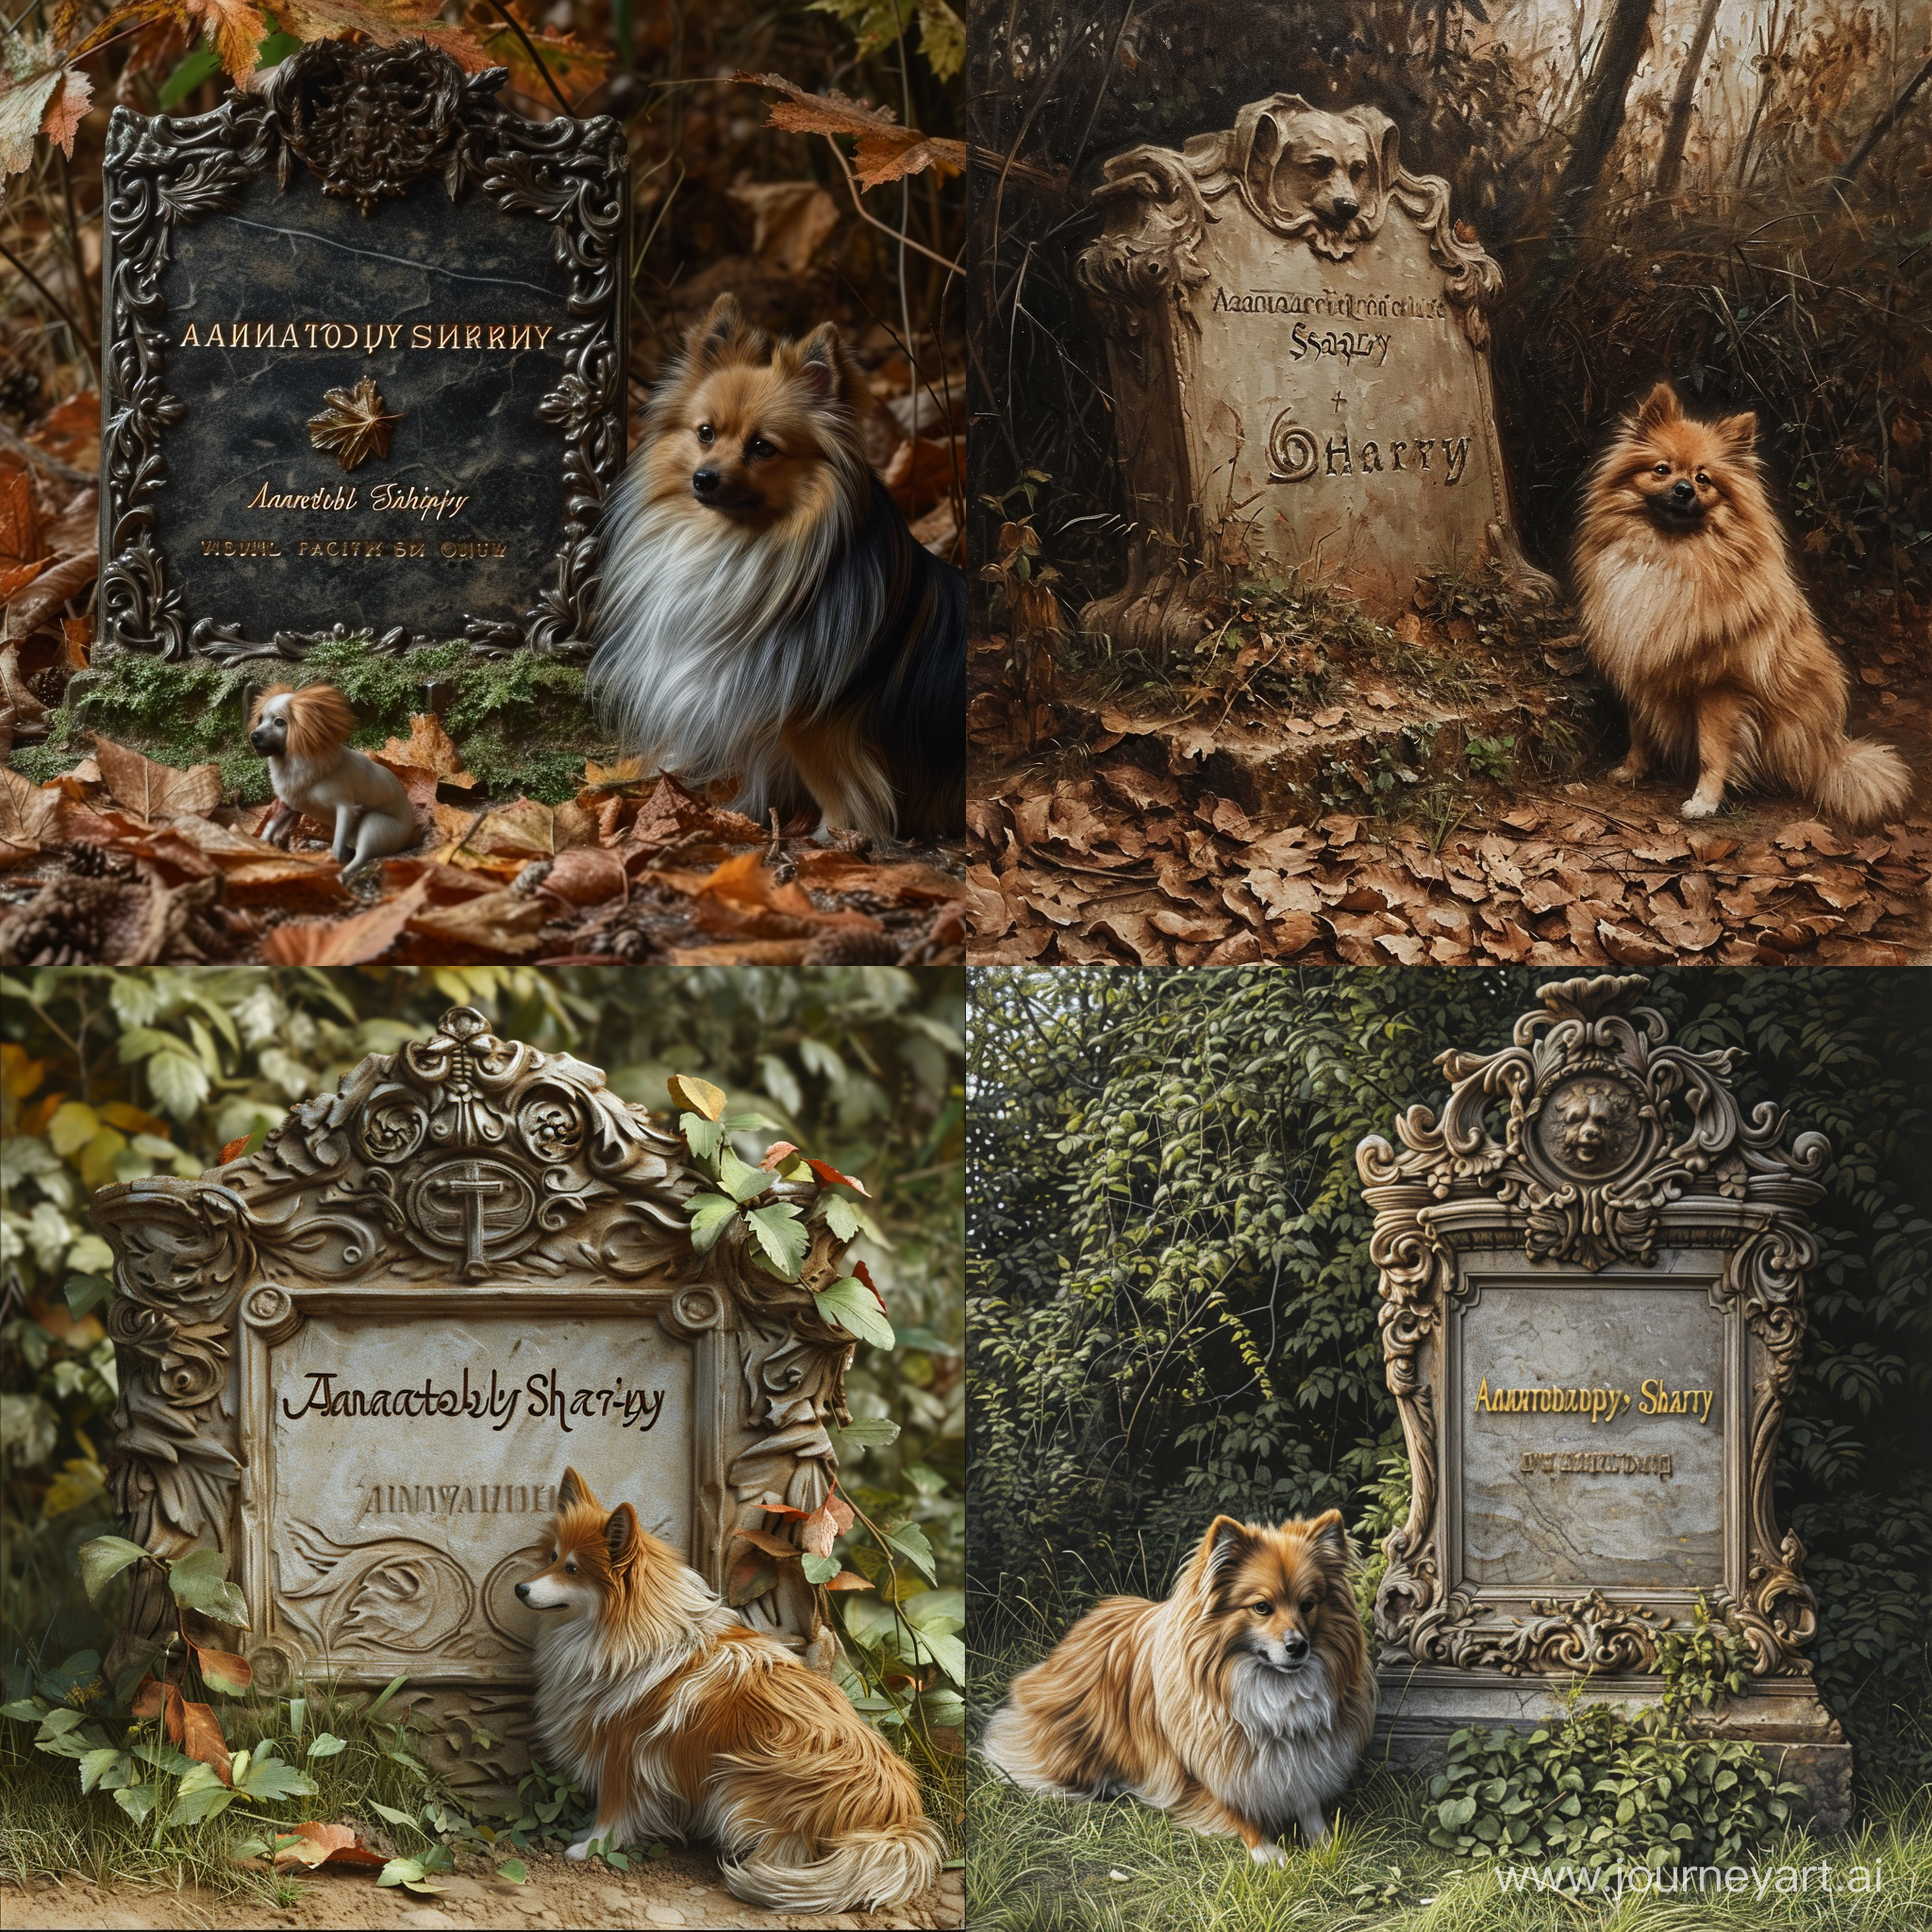 Могила, на которой написано Анатолий Шарий, гиперреализм, большая детализация, рядом сидит собака породы шпиц